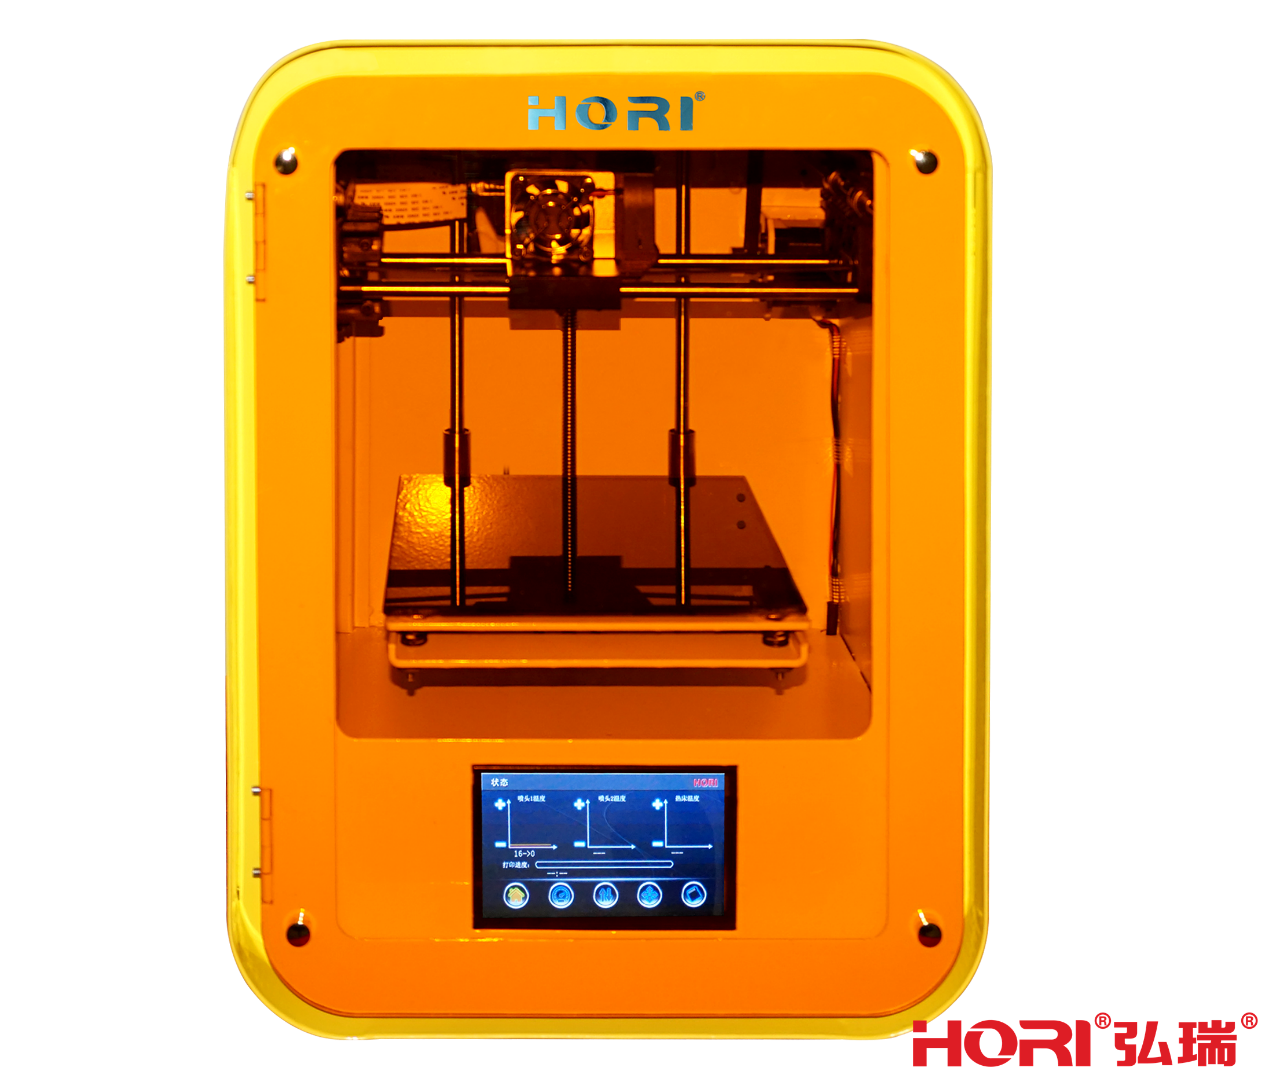 弘瑞3D打印机